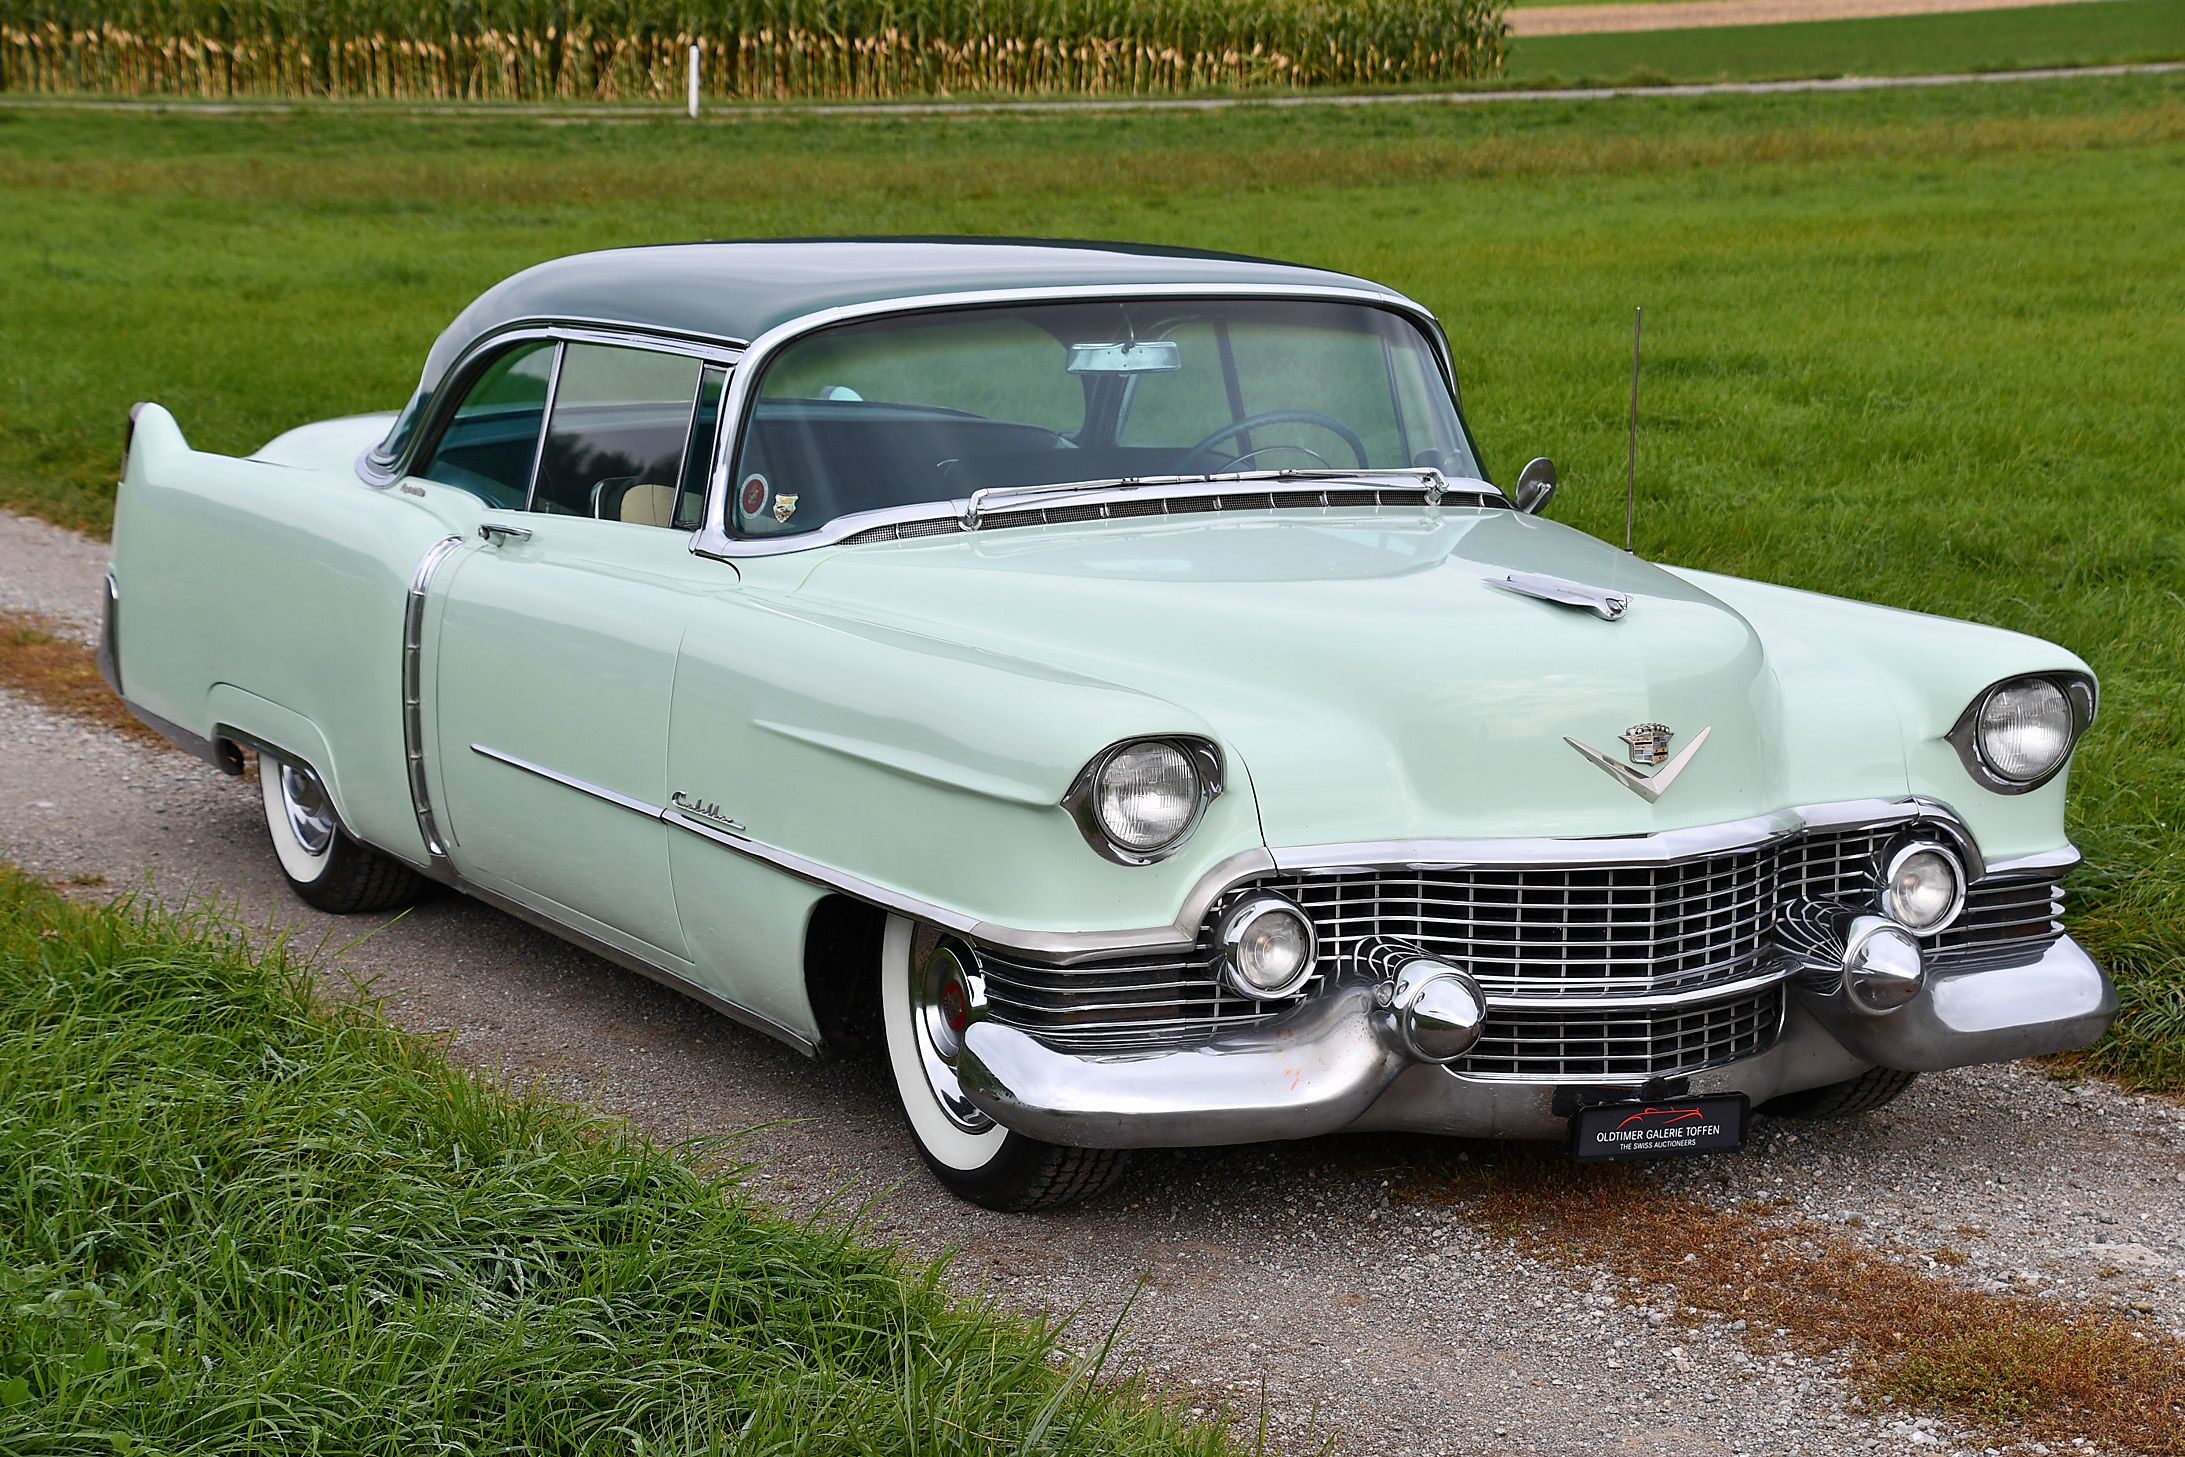 1954 года купить. Cadillac 62 Series 1954. Кадиллак Девиль 1954. Кадиллак купе Девиль 1954. Cadillac Series 62 de ville 1956 года.